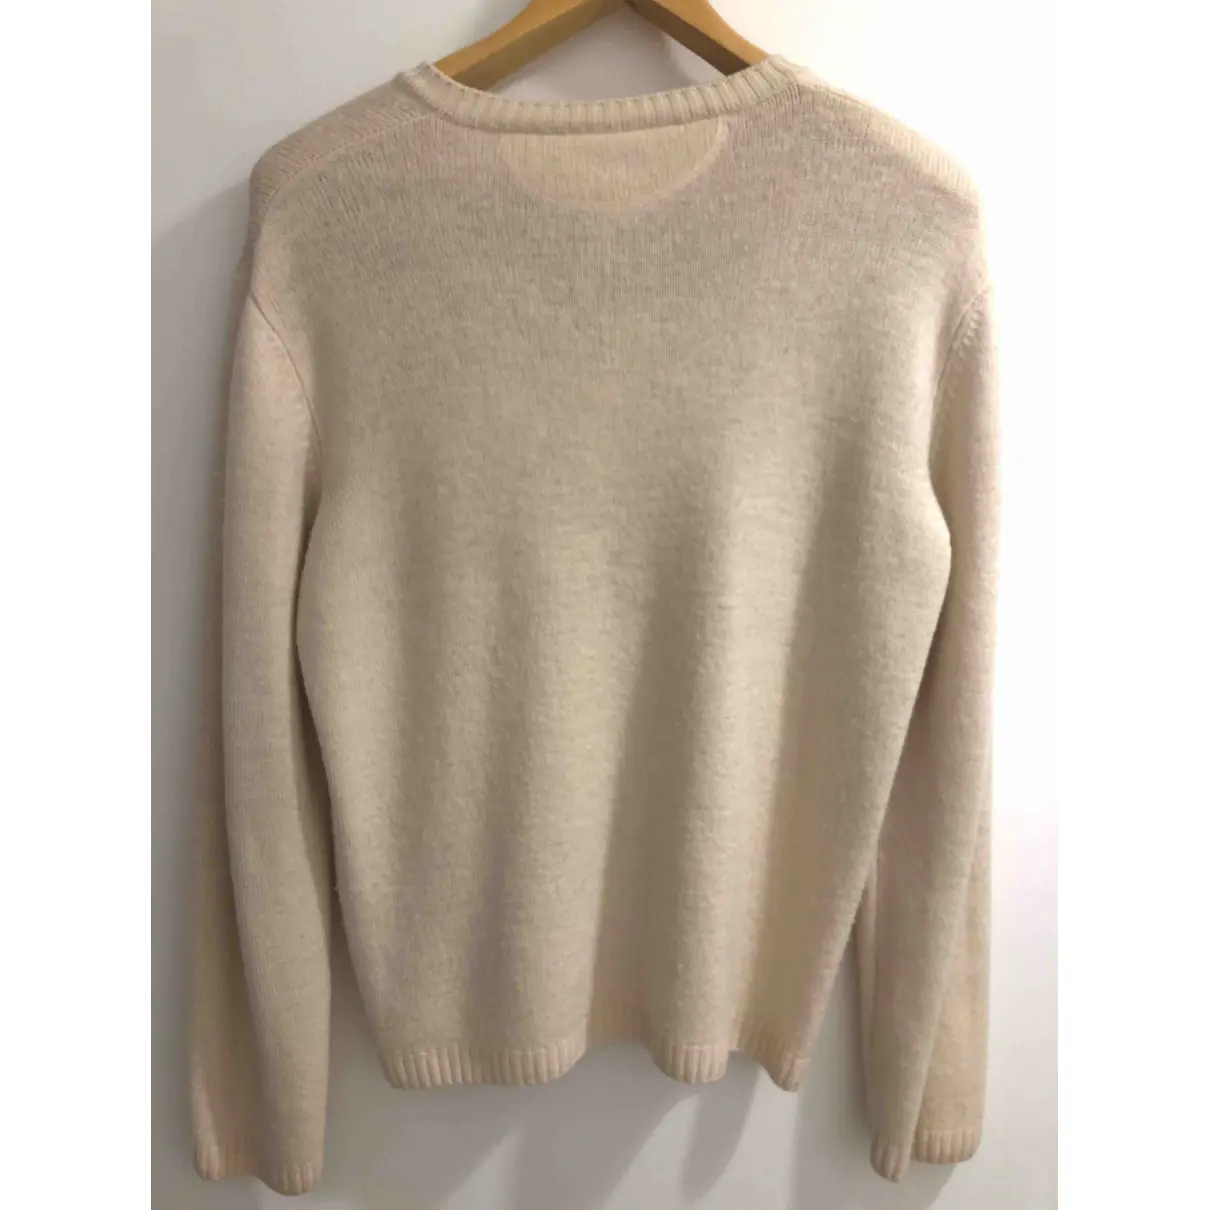 Buy Armani Jeans Wool knitwear & sweatshirt online - Vintage